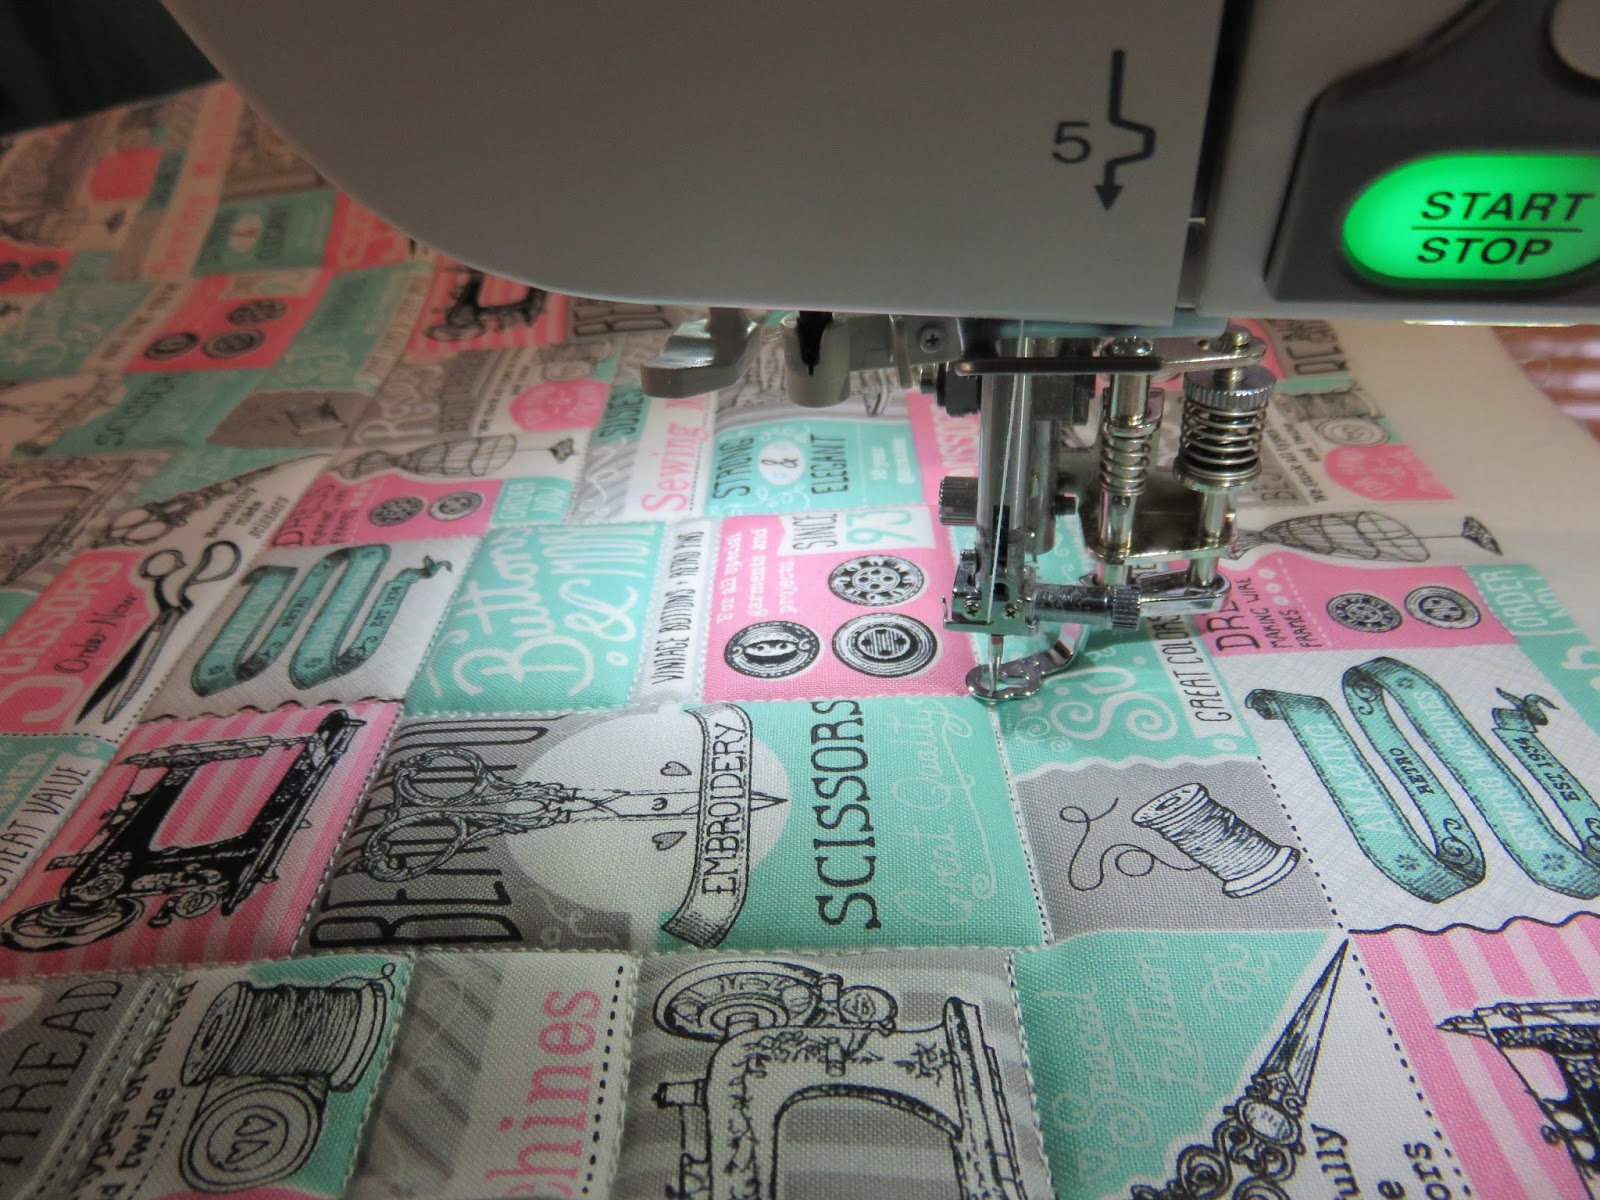 Sewing Machine Organizing Mat Pattern FREE - MHS Blog